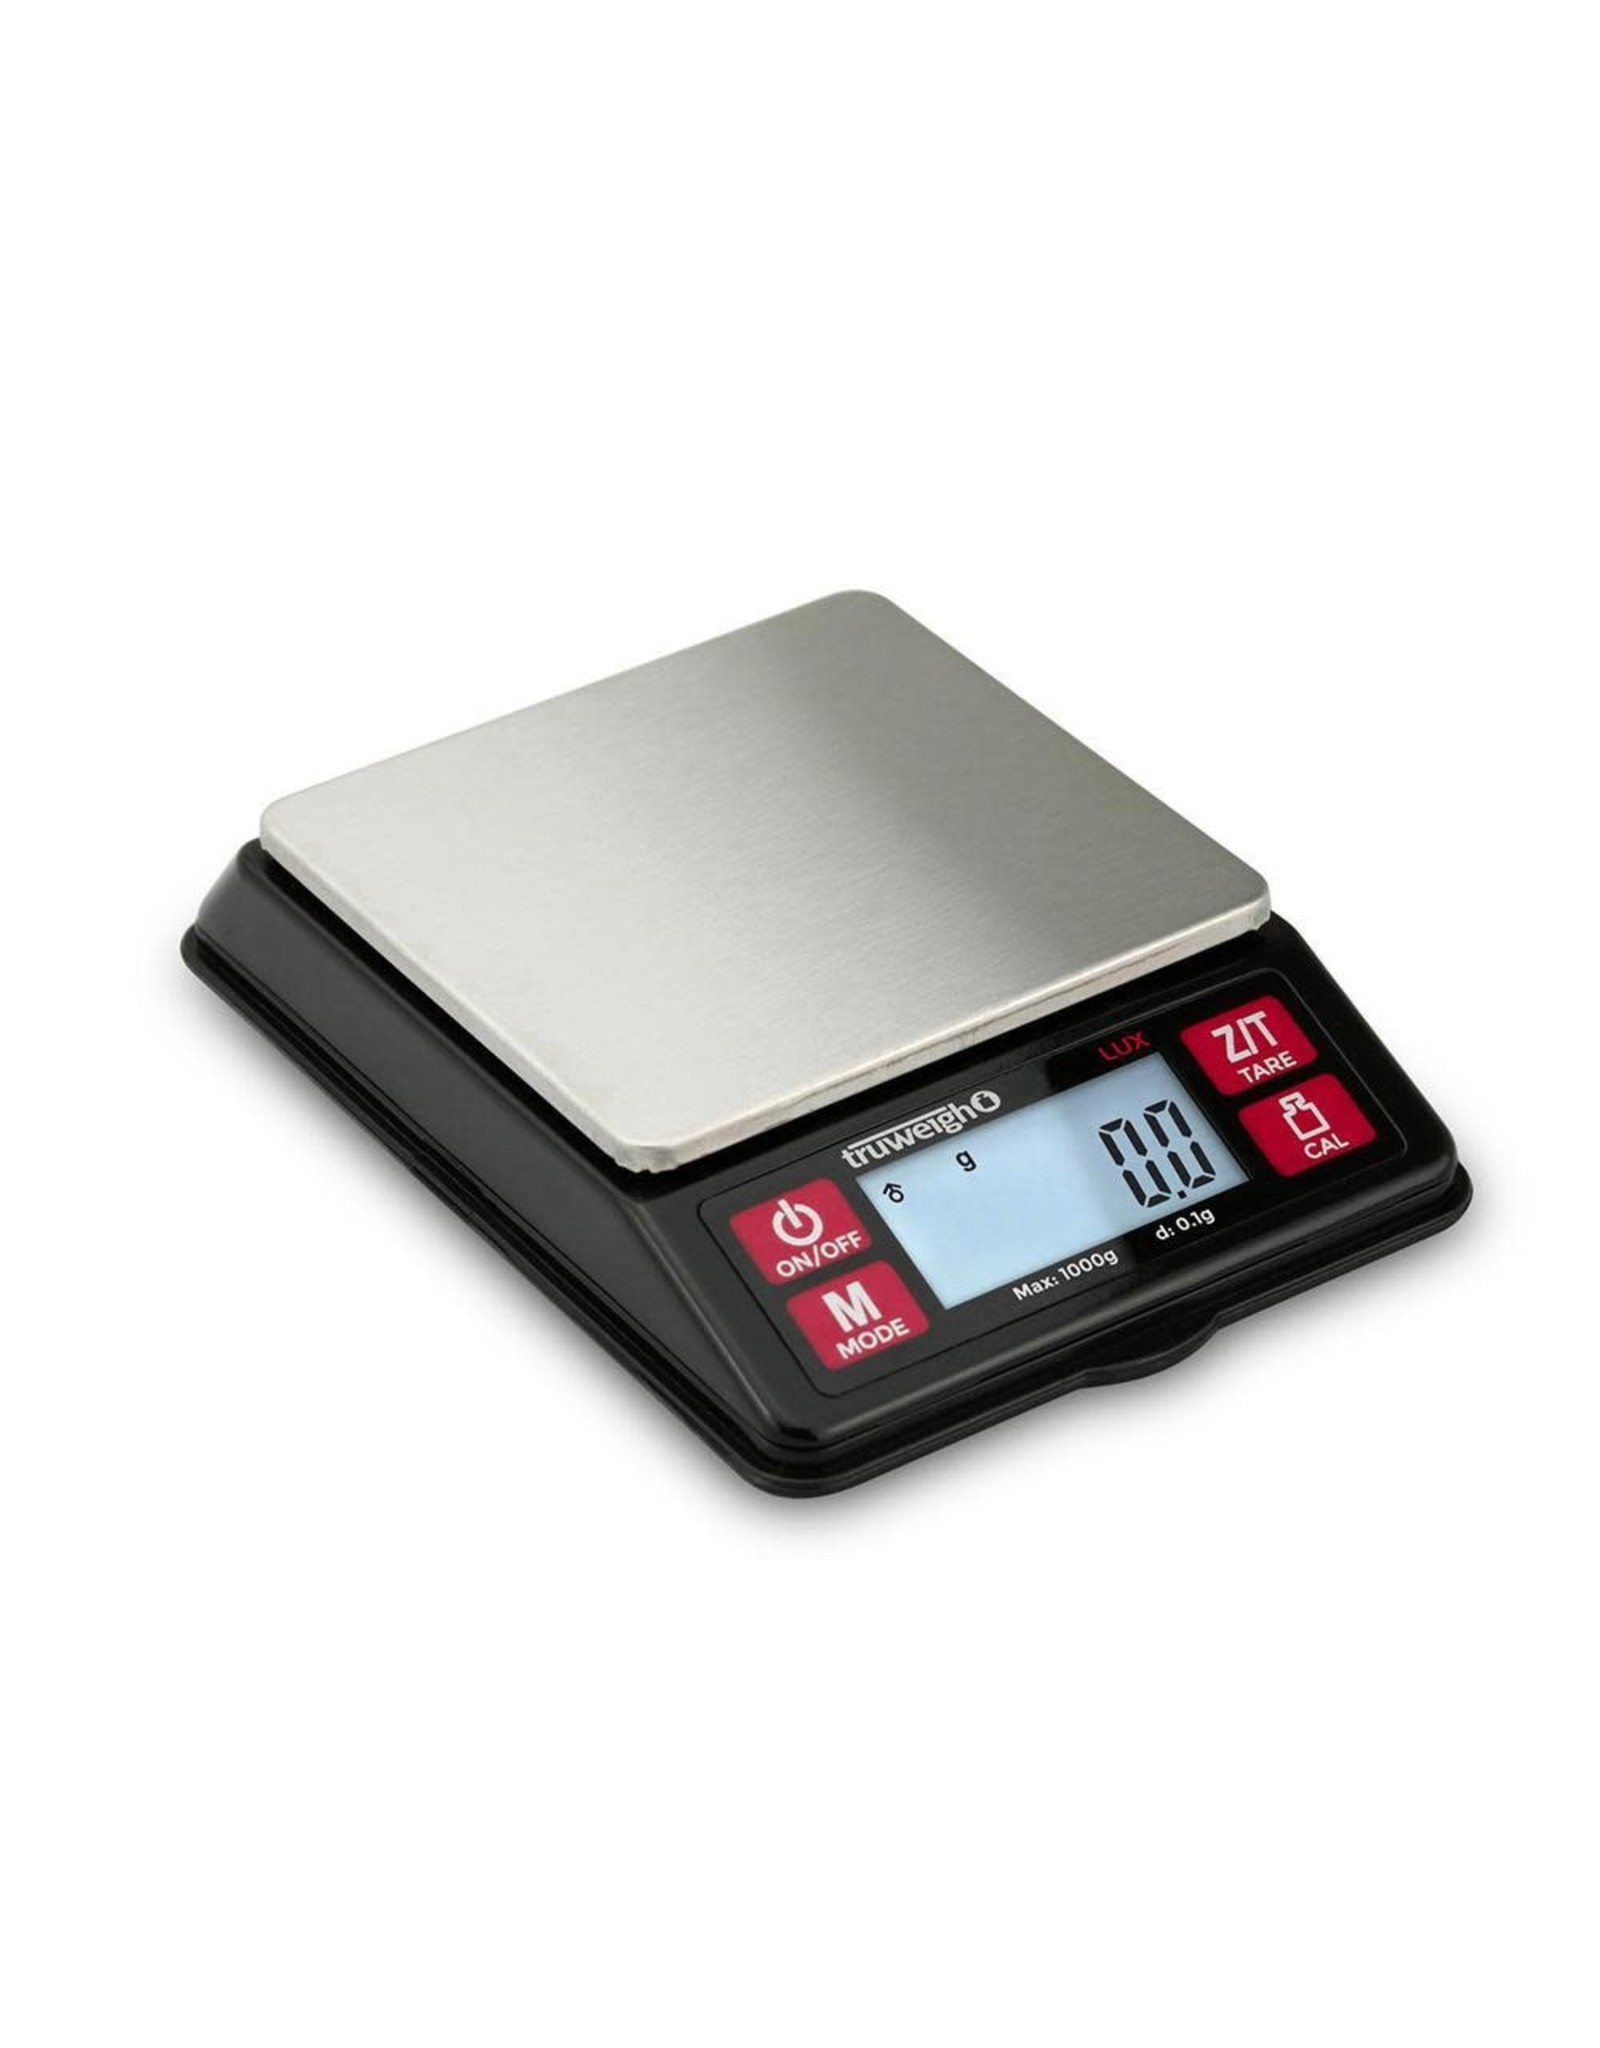 truweigh Truweigh Lux Digital Mini Scale - 1000g x 0.1g / Black